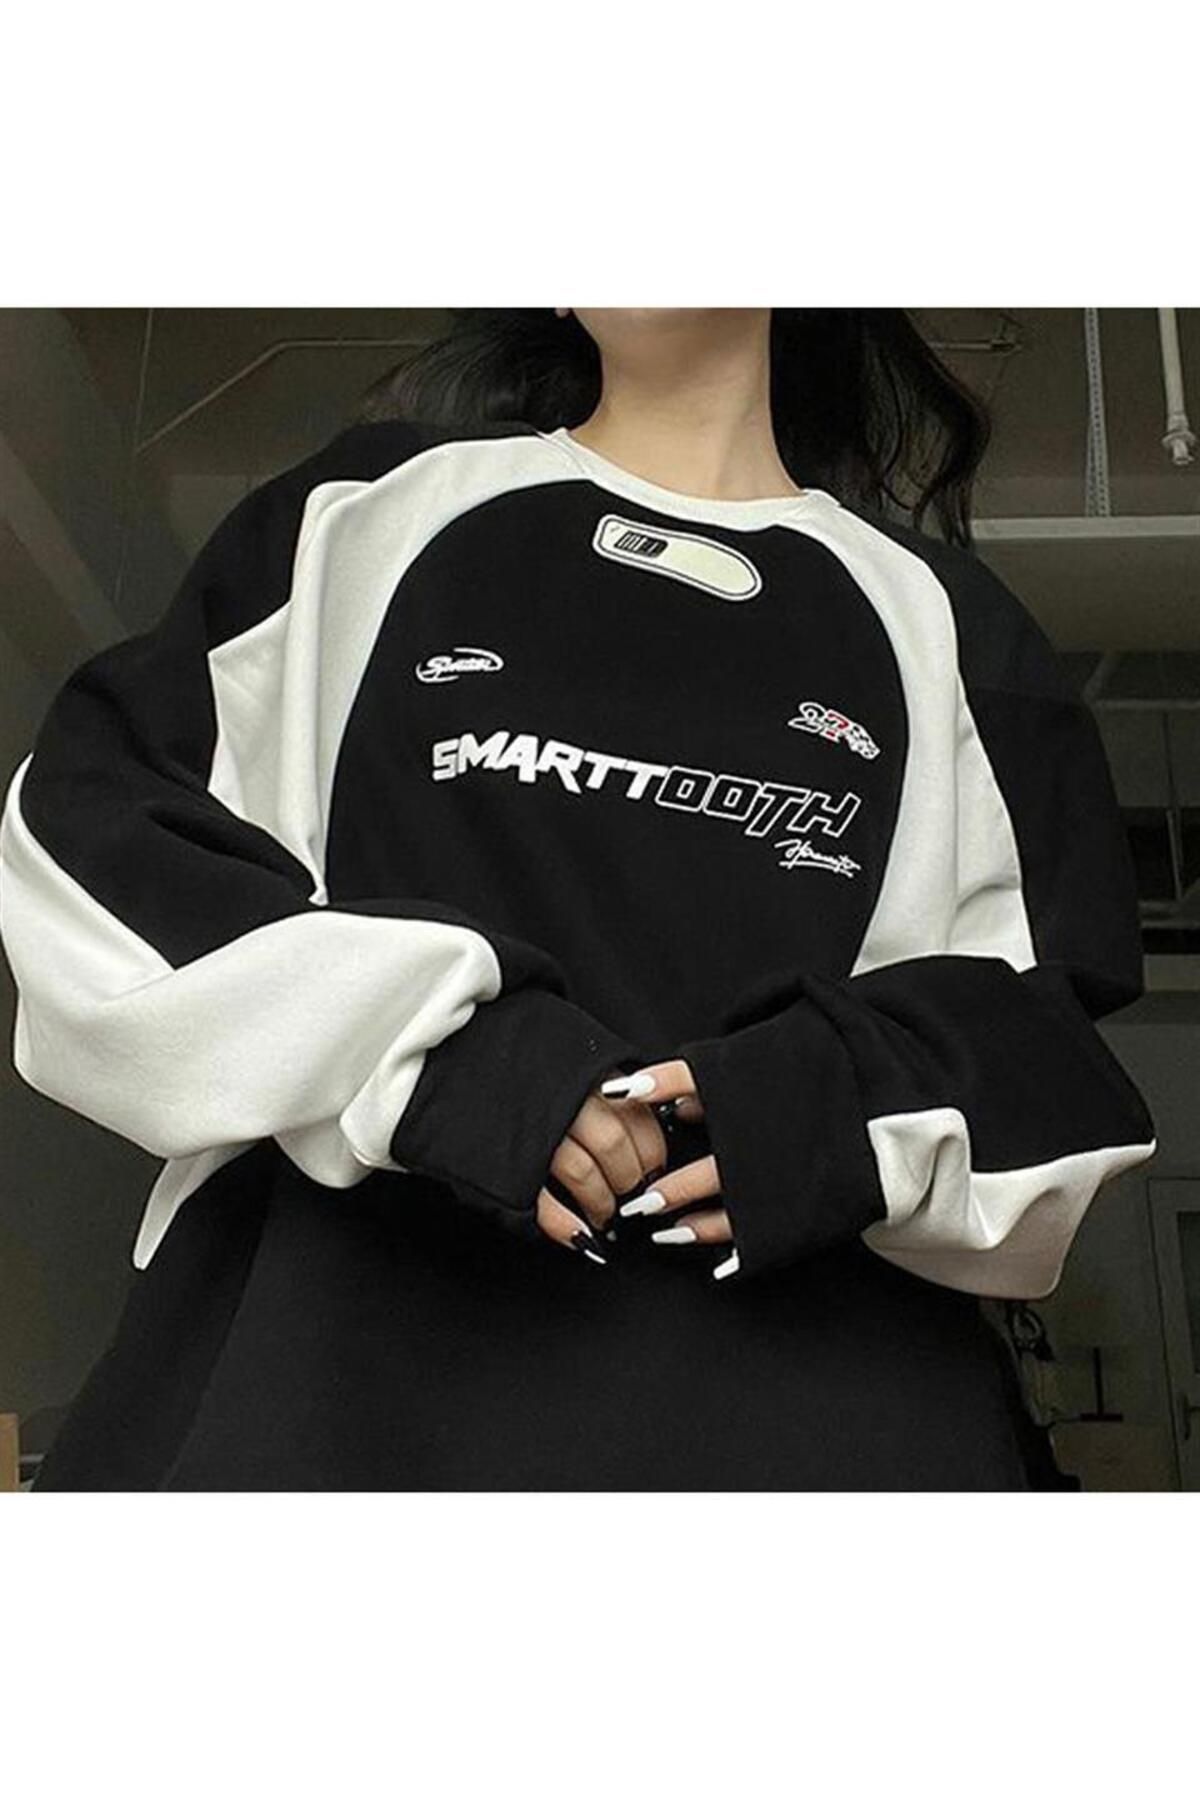 Touz Y2K Streetwear Smarttooth Baskılı Siyah Unisex Oversize Bisiklet Yaka Sweatshirt